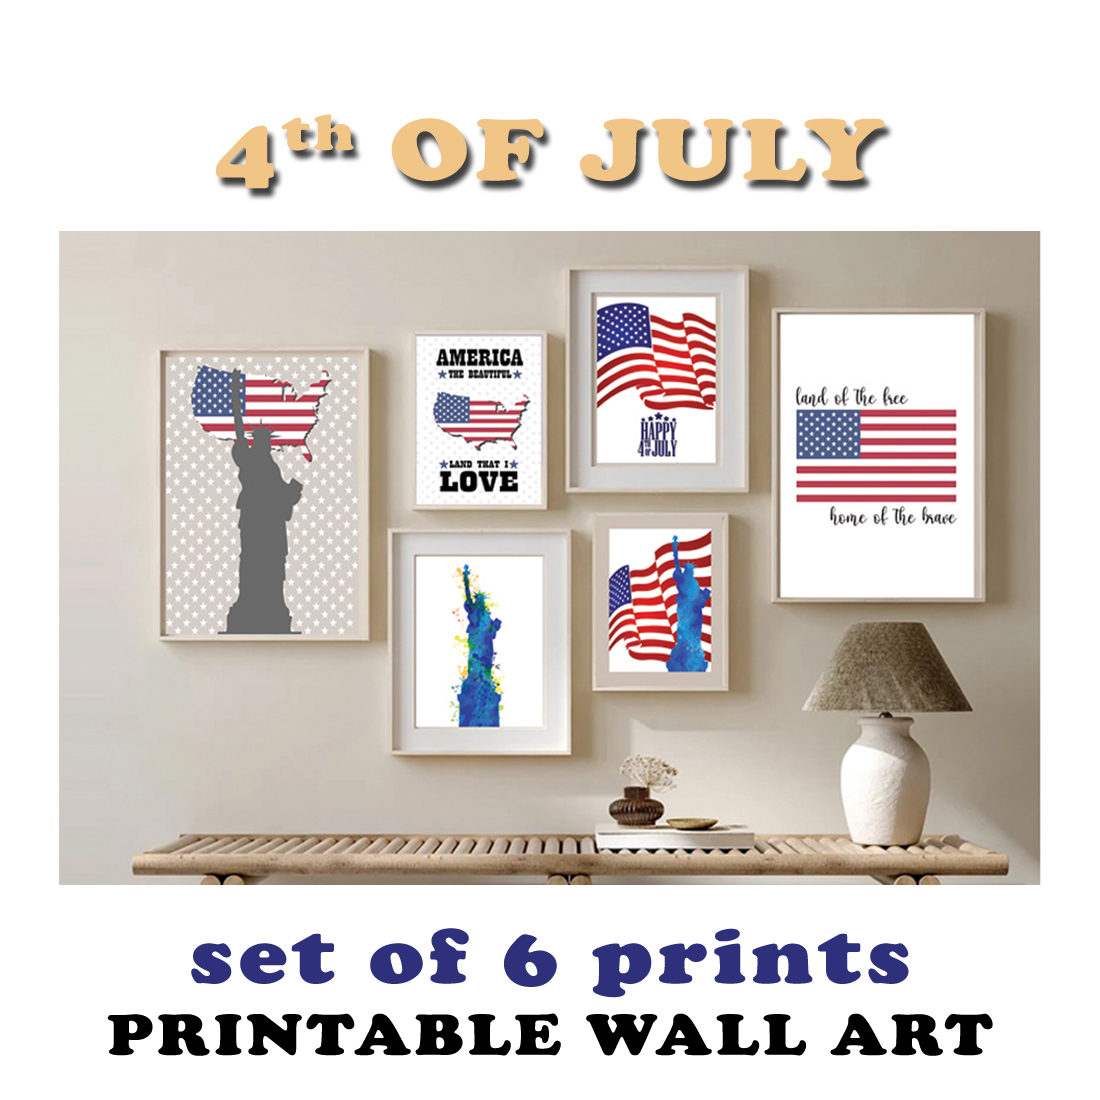 4TH of july printable wall art -set of 6 prints-Printable wall art cover image.